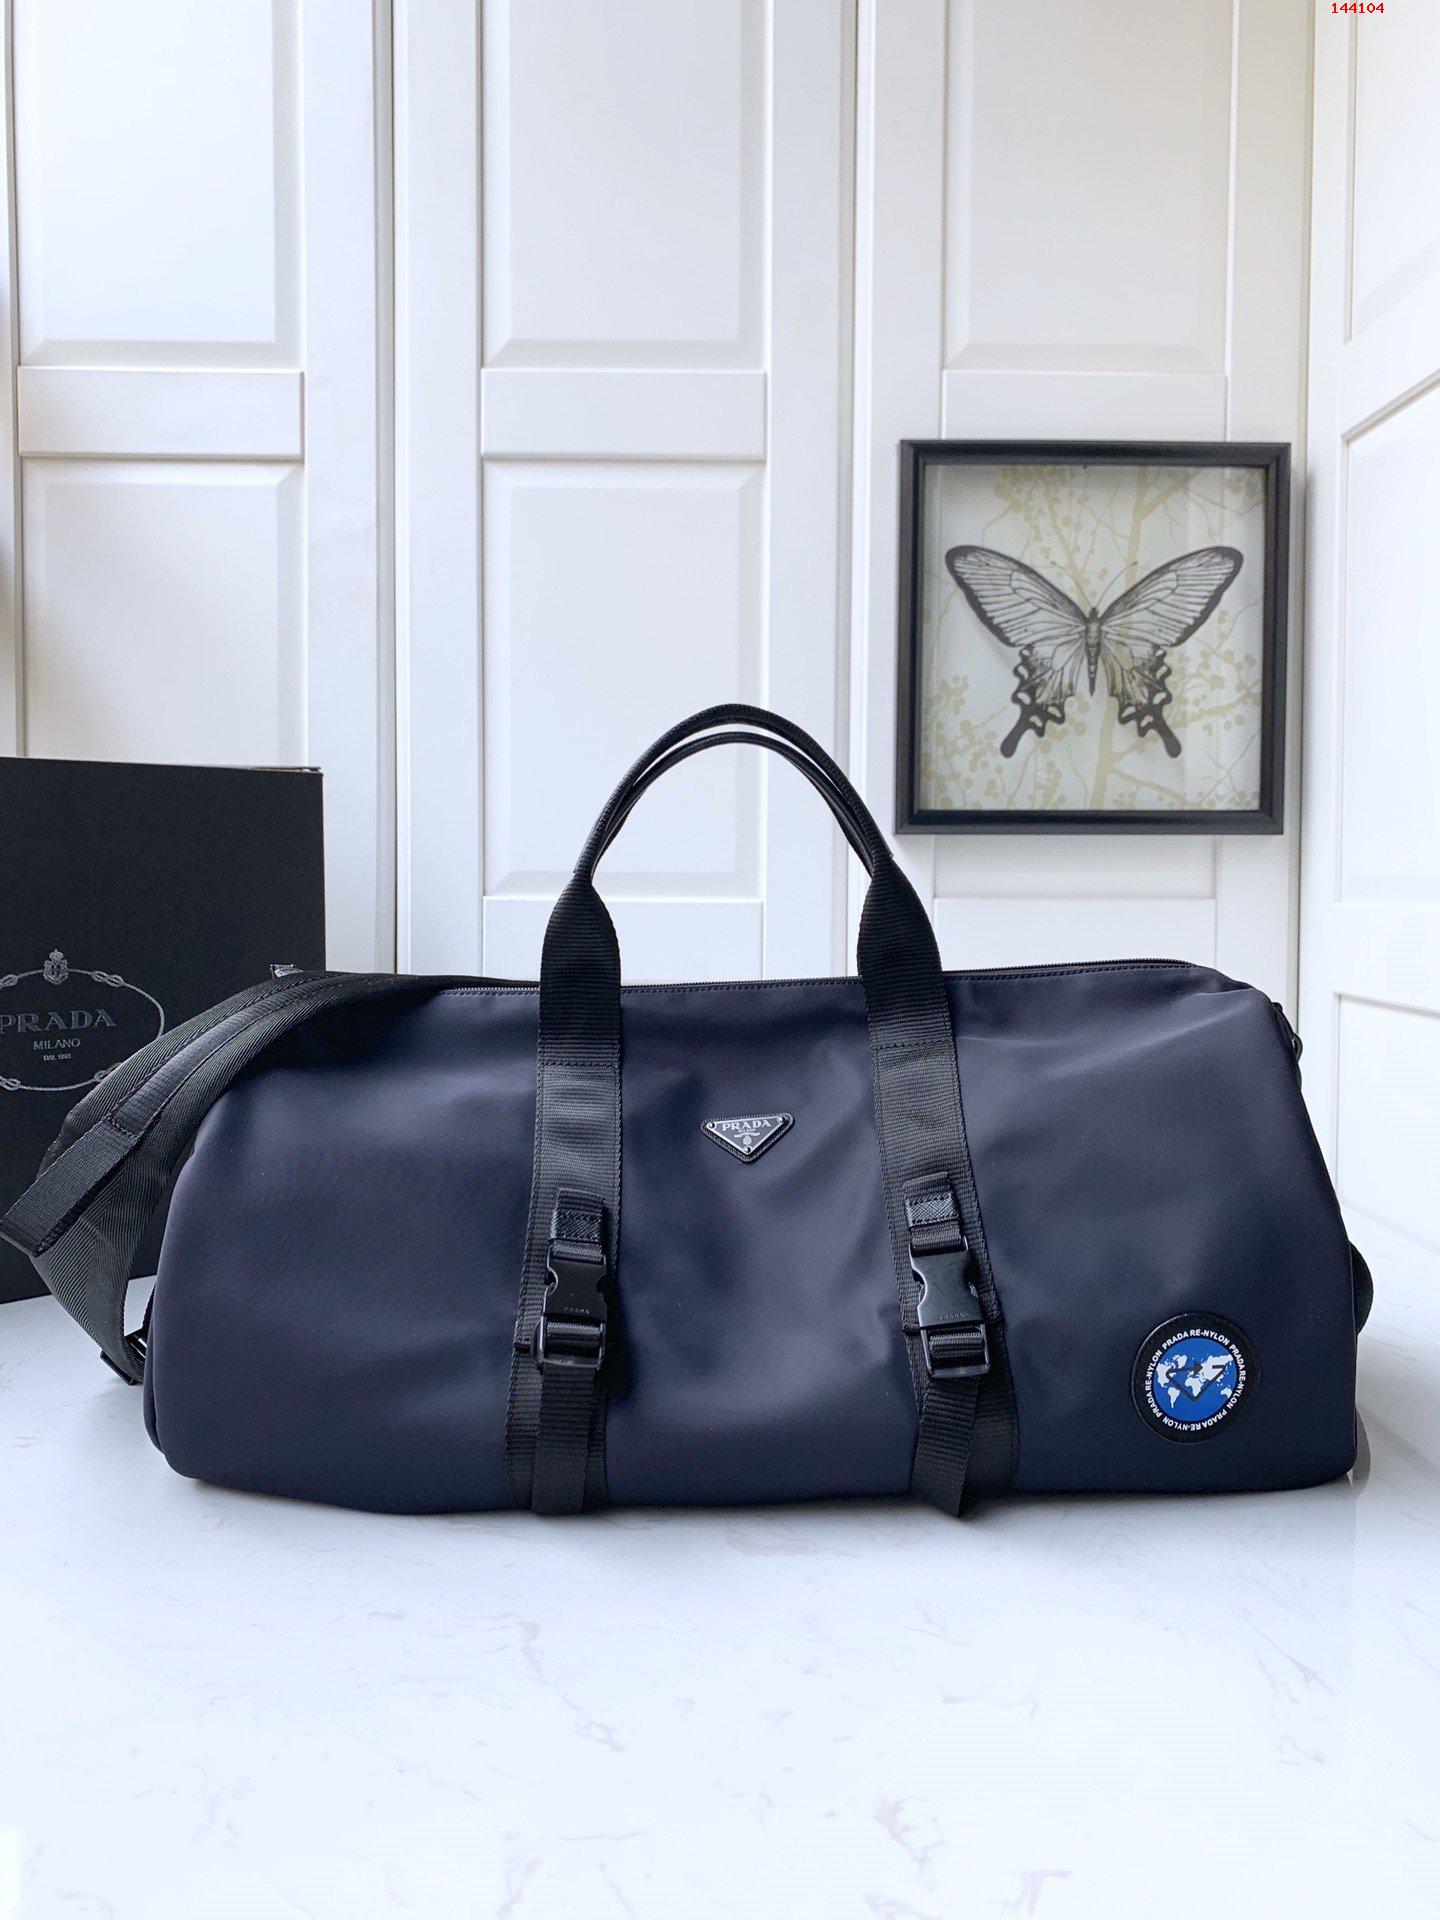 独家首发2VC015新款旅行包这款旅行袋采 高仿品牌包包 精仿名牌男包 